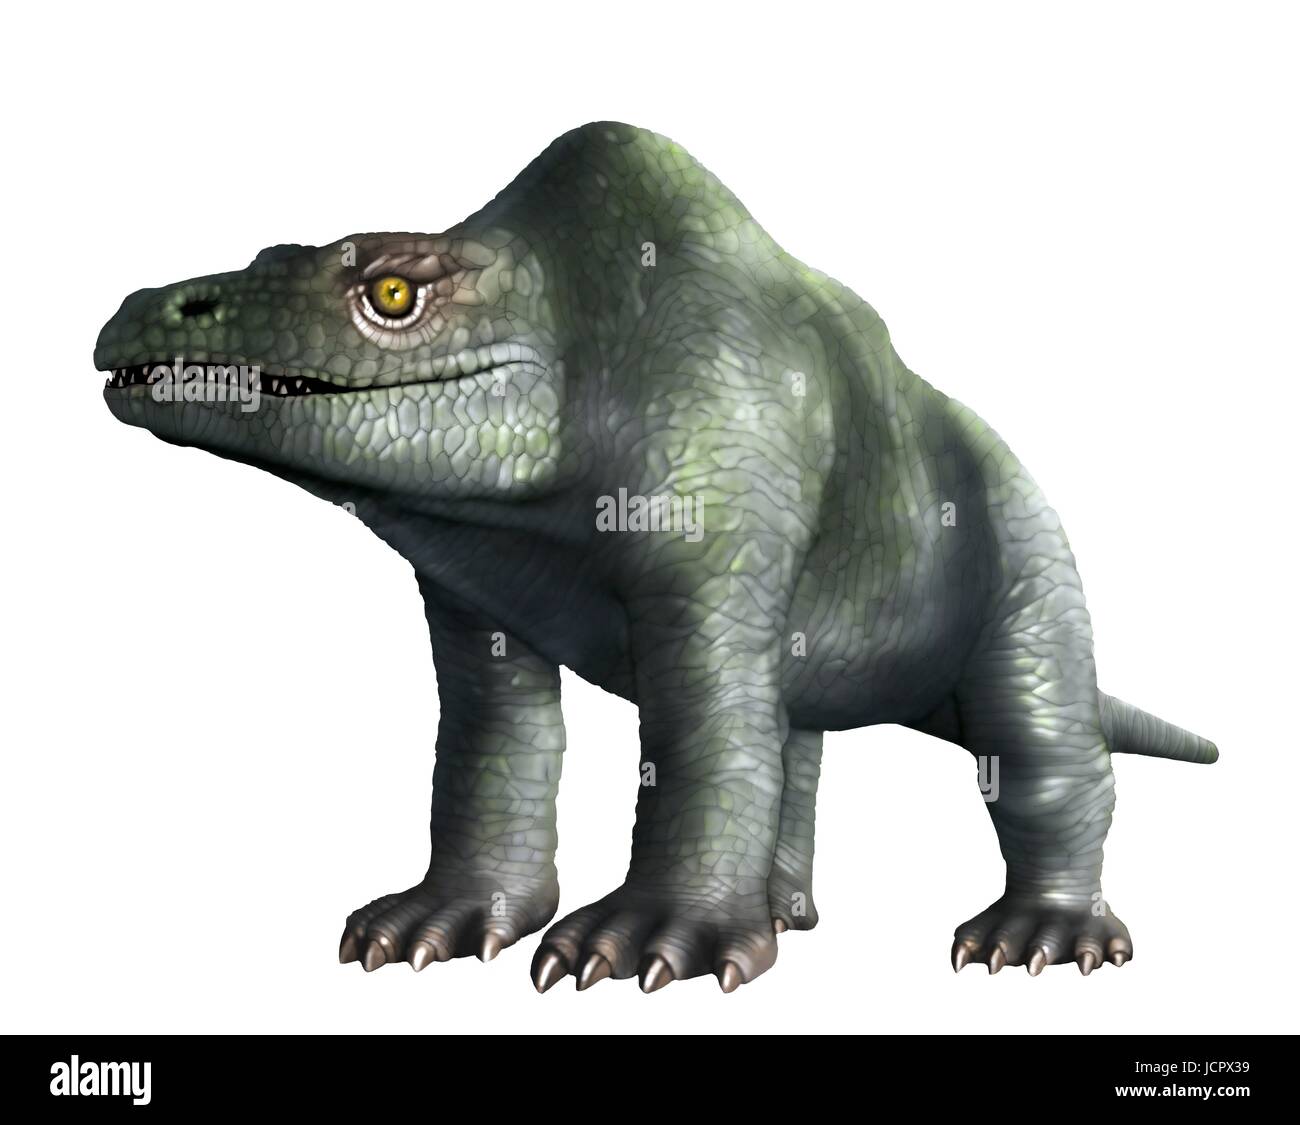 Megalosaurus è genere estinto il mangiar carne dinosauri,theropods,dal Medio giurassico in terra di storia,166 milioni di anni fa.It ha vissuto in quello che è oggi il sud dell'Inghilterra.Il primo fossile di dinosauro mai trovata,come molto tempo fa come 1676,era probabilmente un frammento osseo della coscia che apparteneva a Megalosaurus.Questo animale era di dimensioni medie theropod,da 6 a 7 metri di lunghezza con un peso di circa una tonnellata.Questa illustrazione mostra animali come era stato originariamente immaginato di apparire,indietro nel diciannovesimo secolo.L'immagine si basa famose statue animale in London Crystal Palace Park. Foto Stock